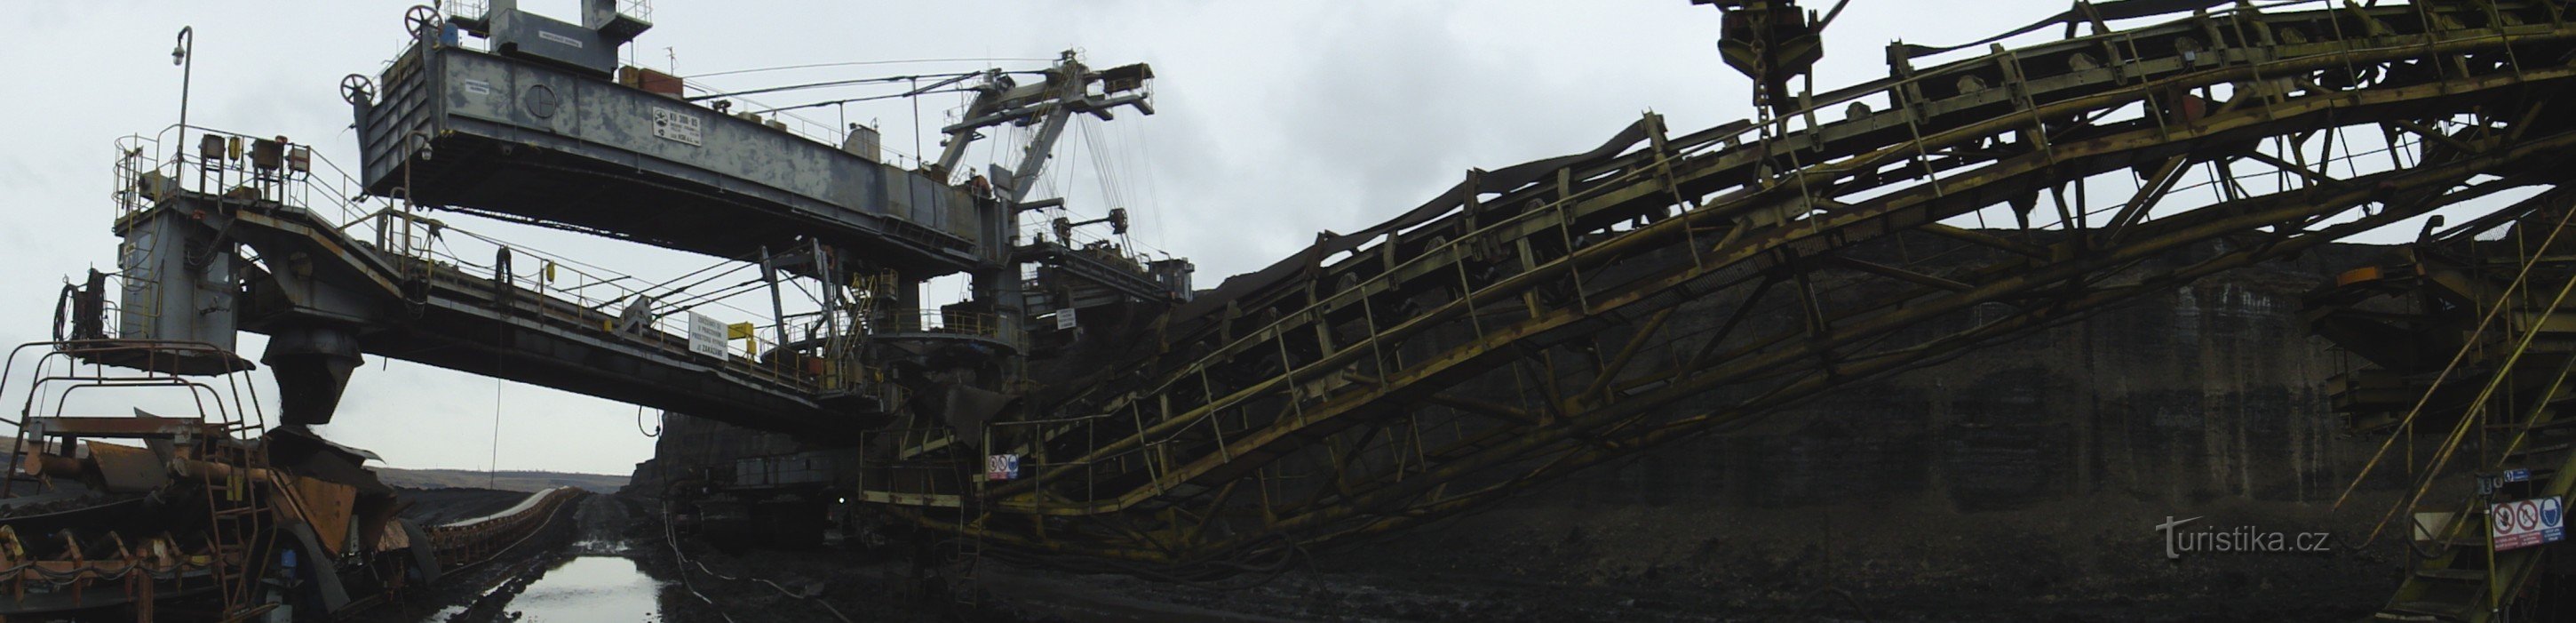 ČSA mine - Coal excavator KU 300